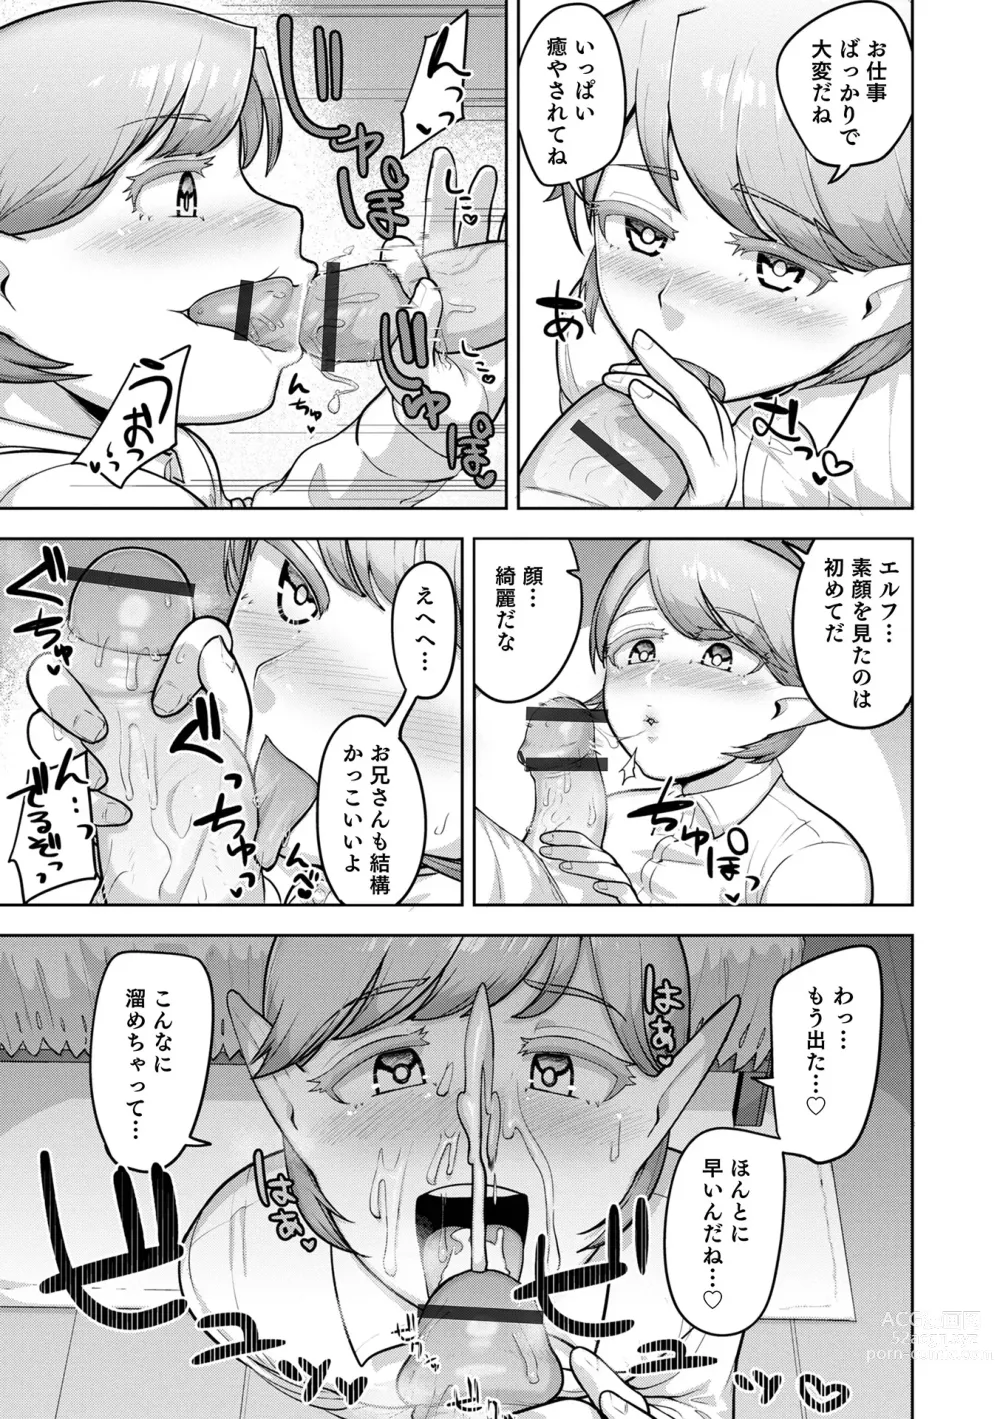 Page 31 of manga Muchiniku Otokonoko Tenshi’s